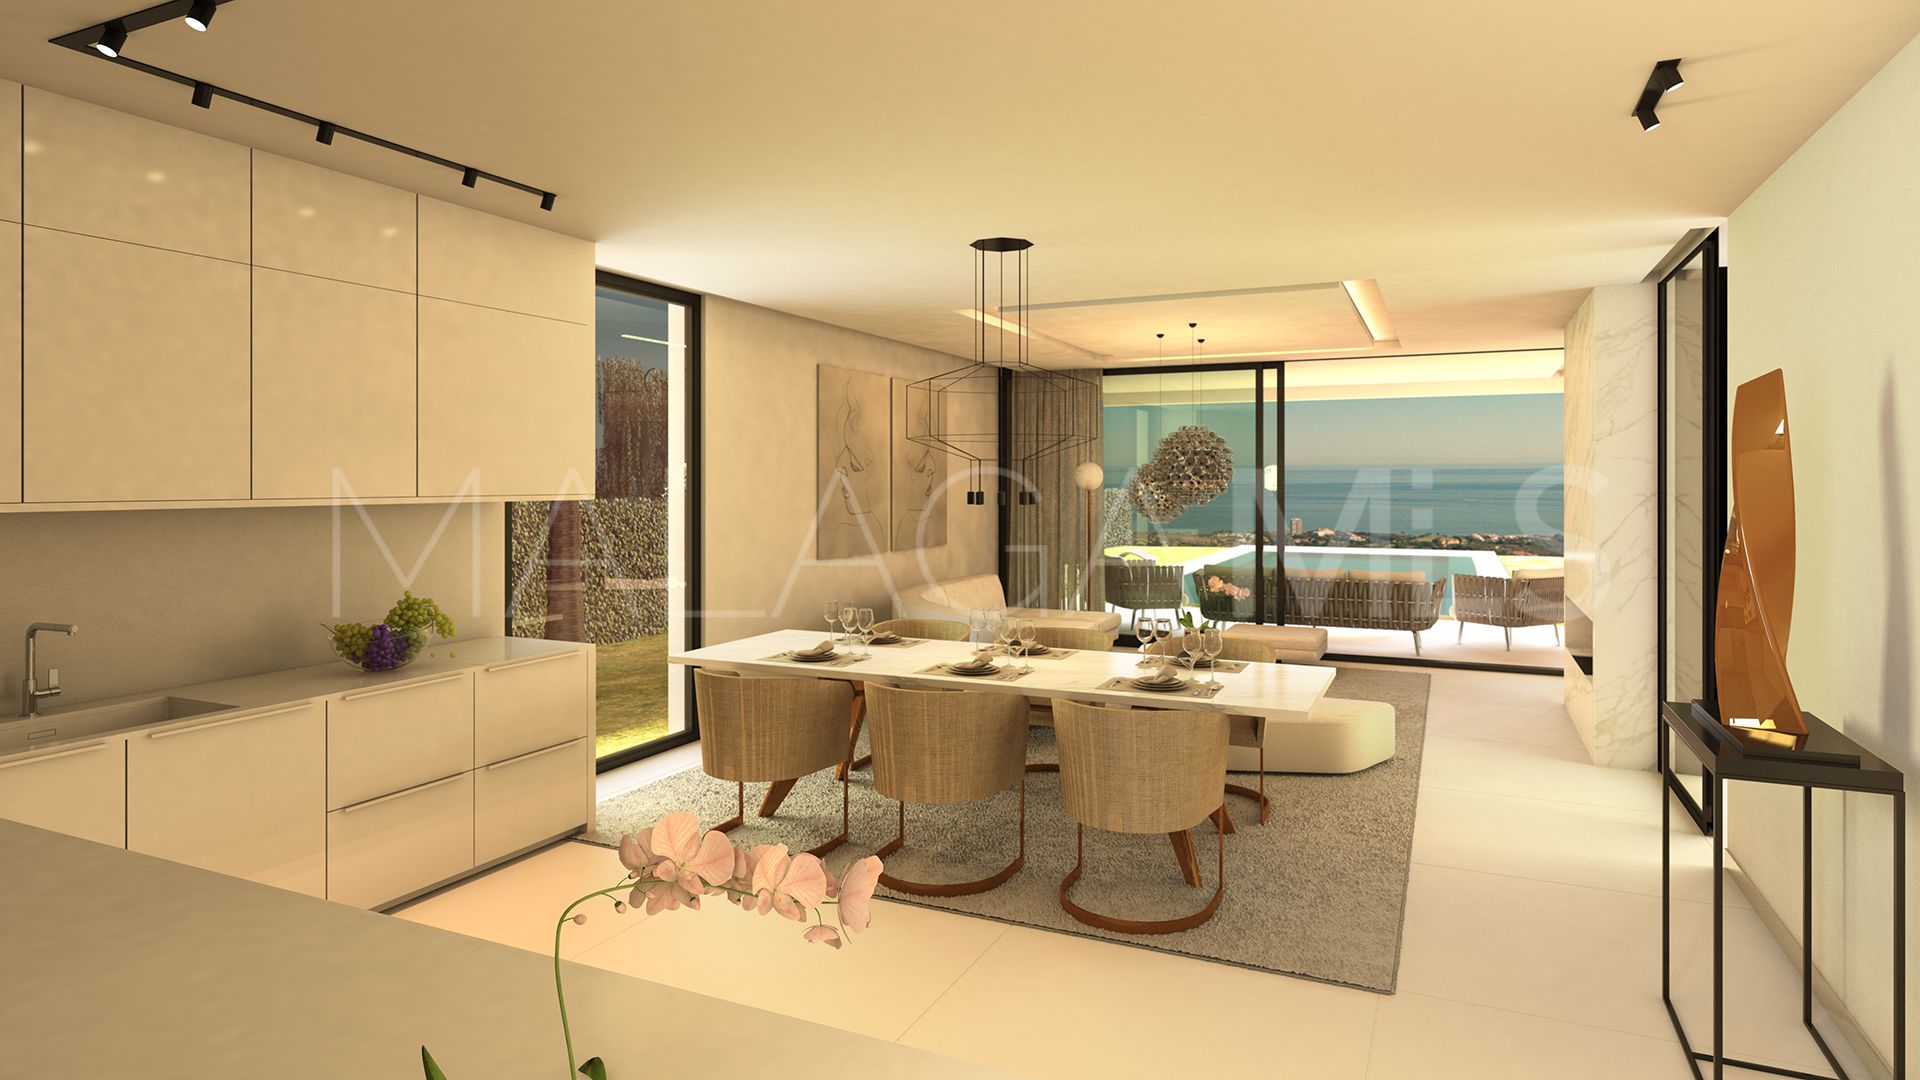 Villa for sale with 5 bedrooms in La Reserva de Marbella